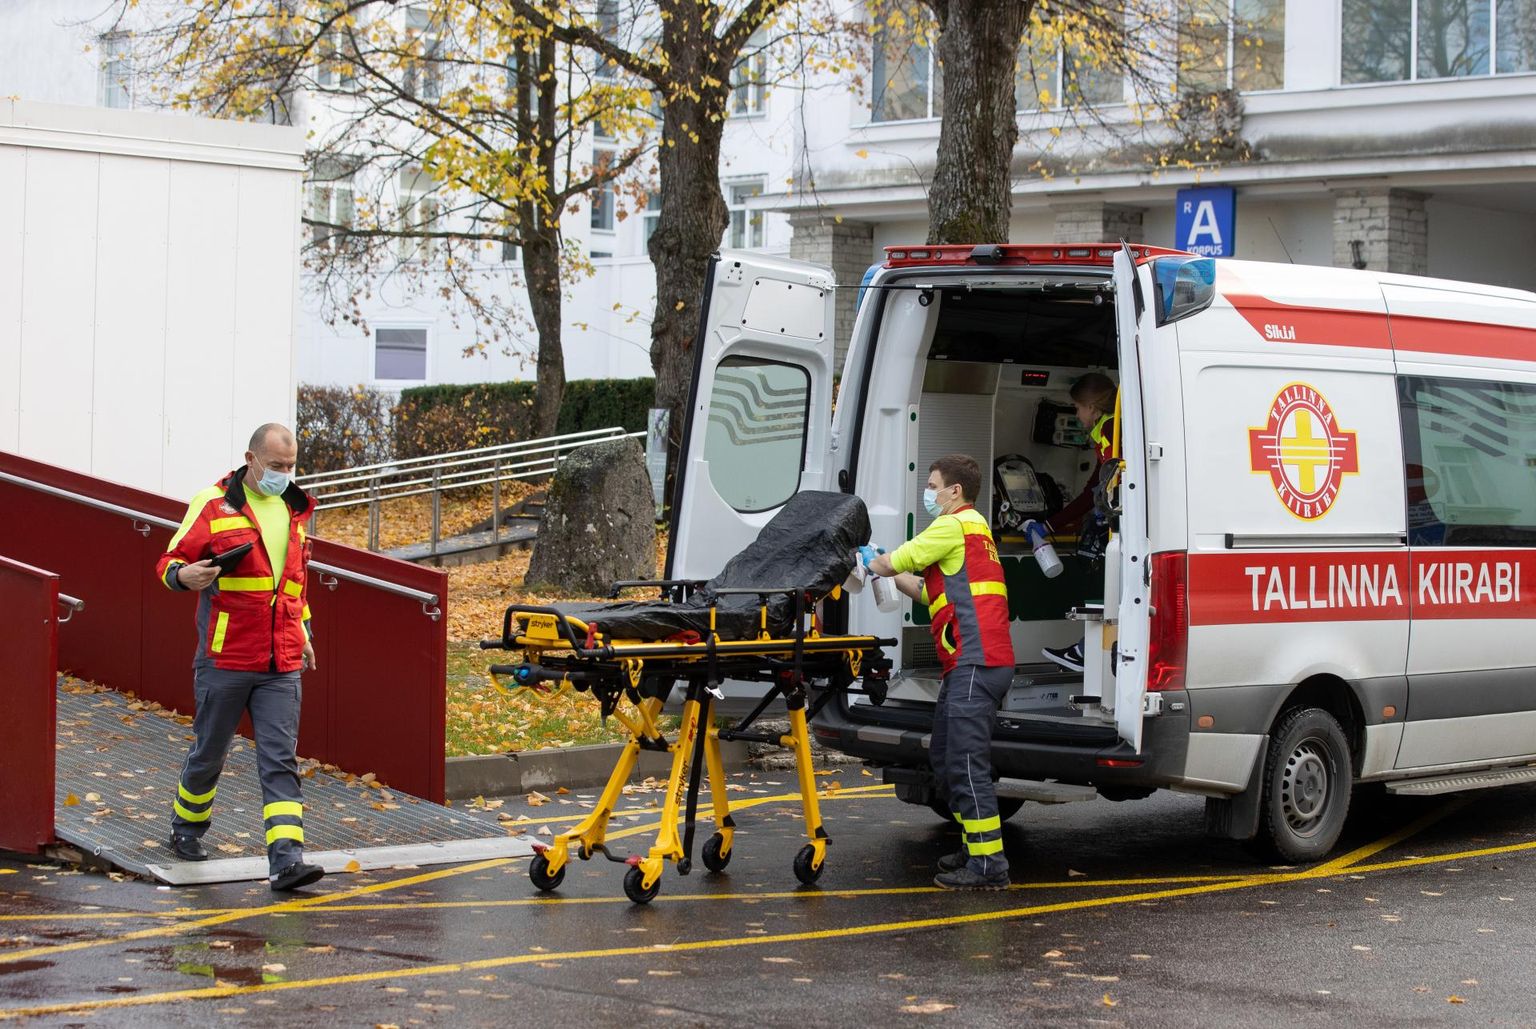 Tallinna kiirabibrigaad desinfitseerimas kanderaami ja autot pärast haige transportimist. Tallinna kiirabi juht Raul Adlas nimetas praegust olukorda Tallinna kiirabi vaatevinklist ebatervelt kiireks ajaks.